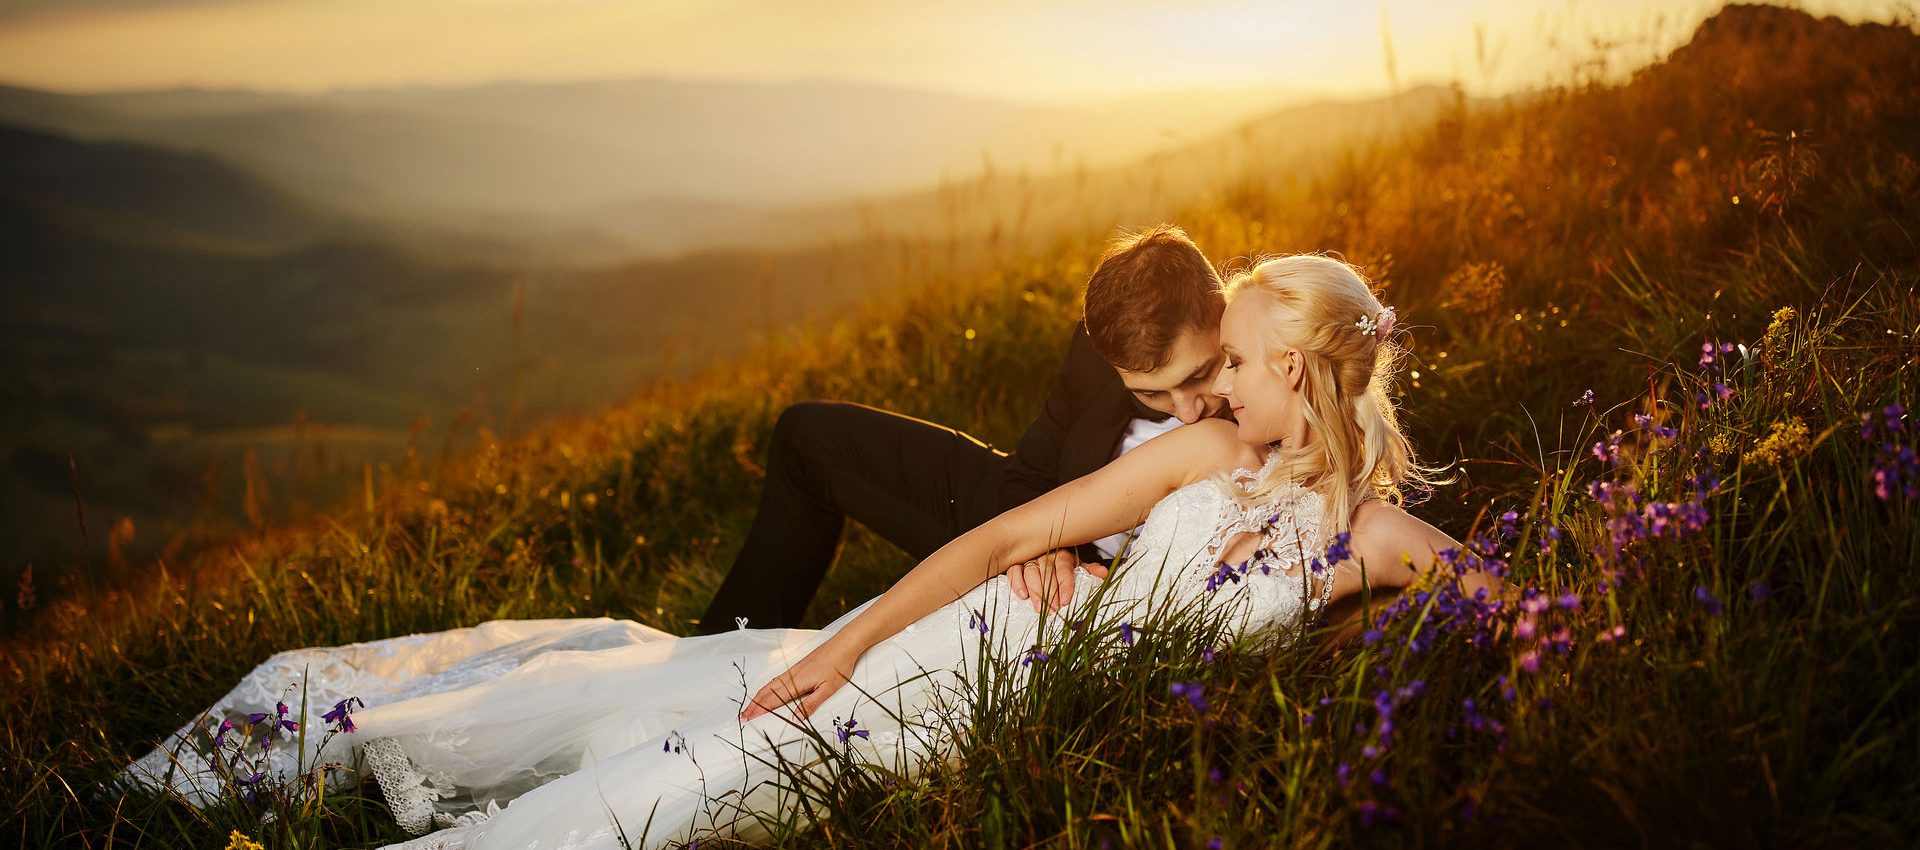 Fotograf ślubny - pan młody i panna młoda o zachodzie słońca na polanie w górach